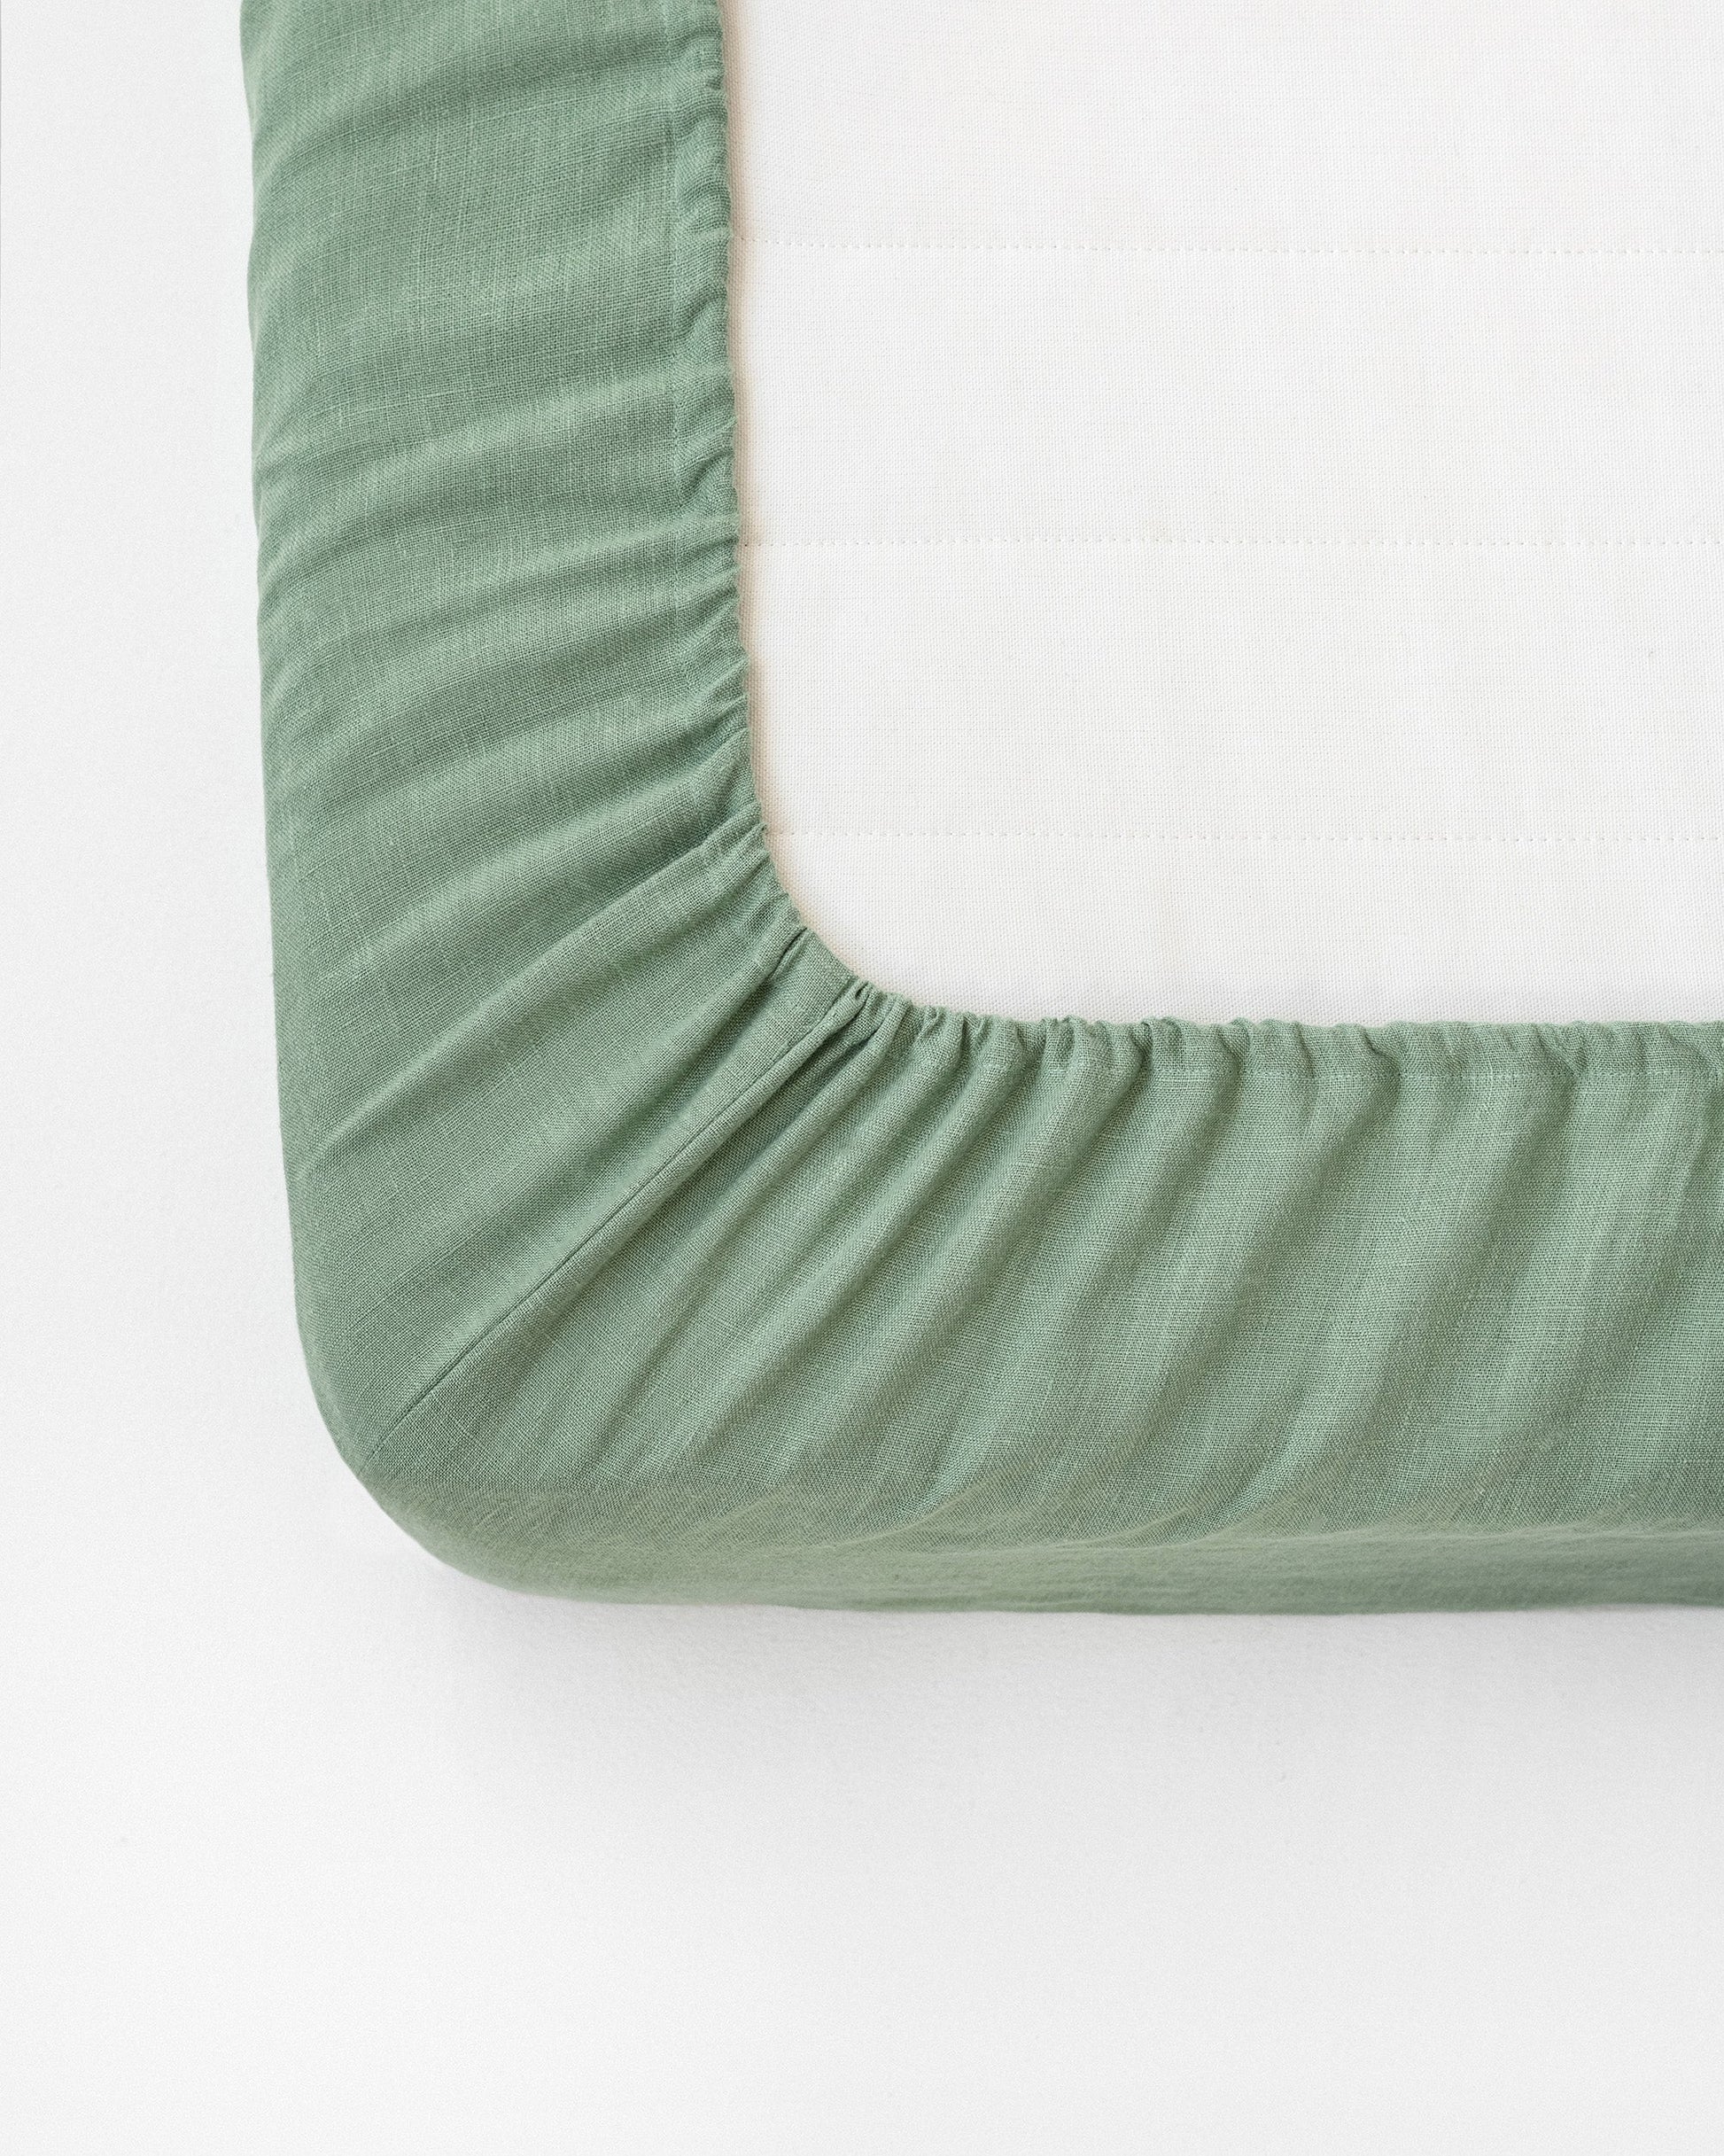 Custom size Matcha green linen fitted sheet - MagicLinen